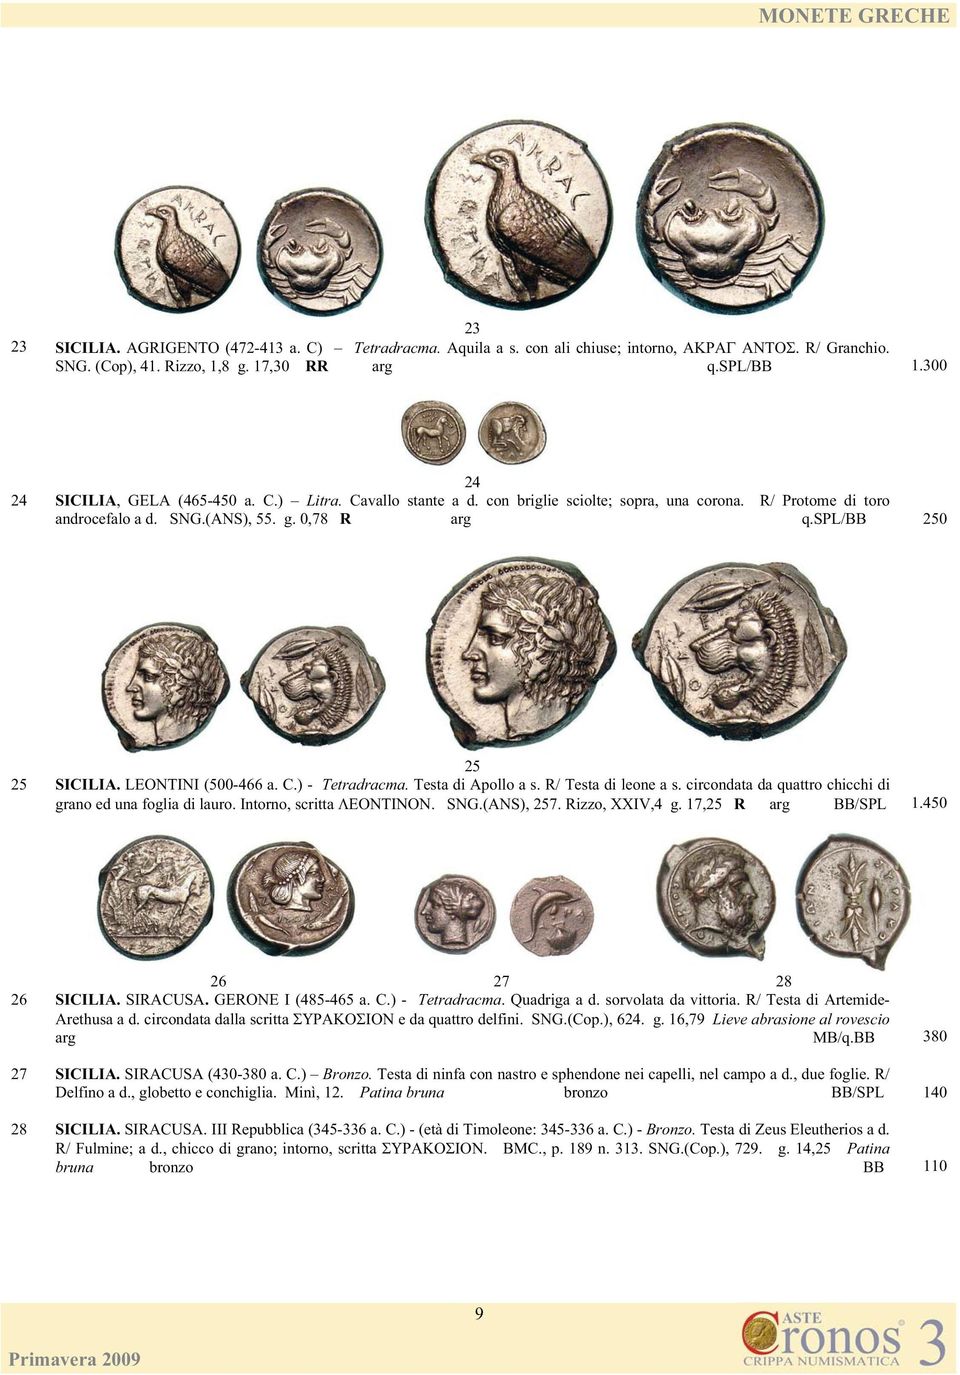 LEONTINI (500-466 a. C.) - Tetradracma. Testa di Apollo a s. R/ Testa di leone a s. circondata da quattro chicchi di grano ed una foglia di lauro. Intorno, scritta. SNG.(ANS), 257. Rizzo, XXIV,4 g.